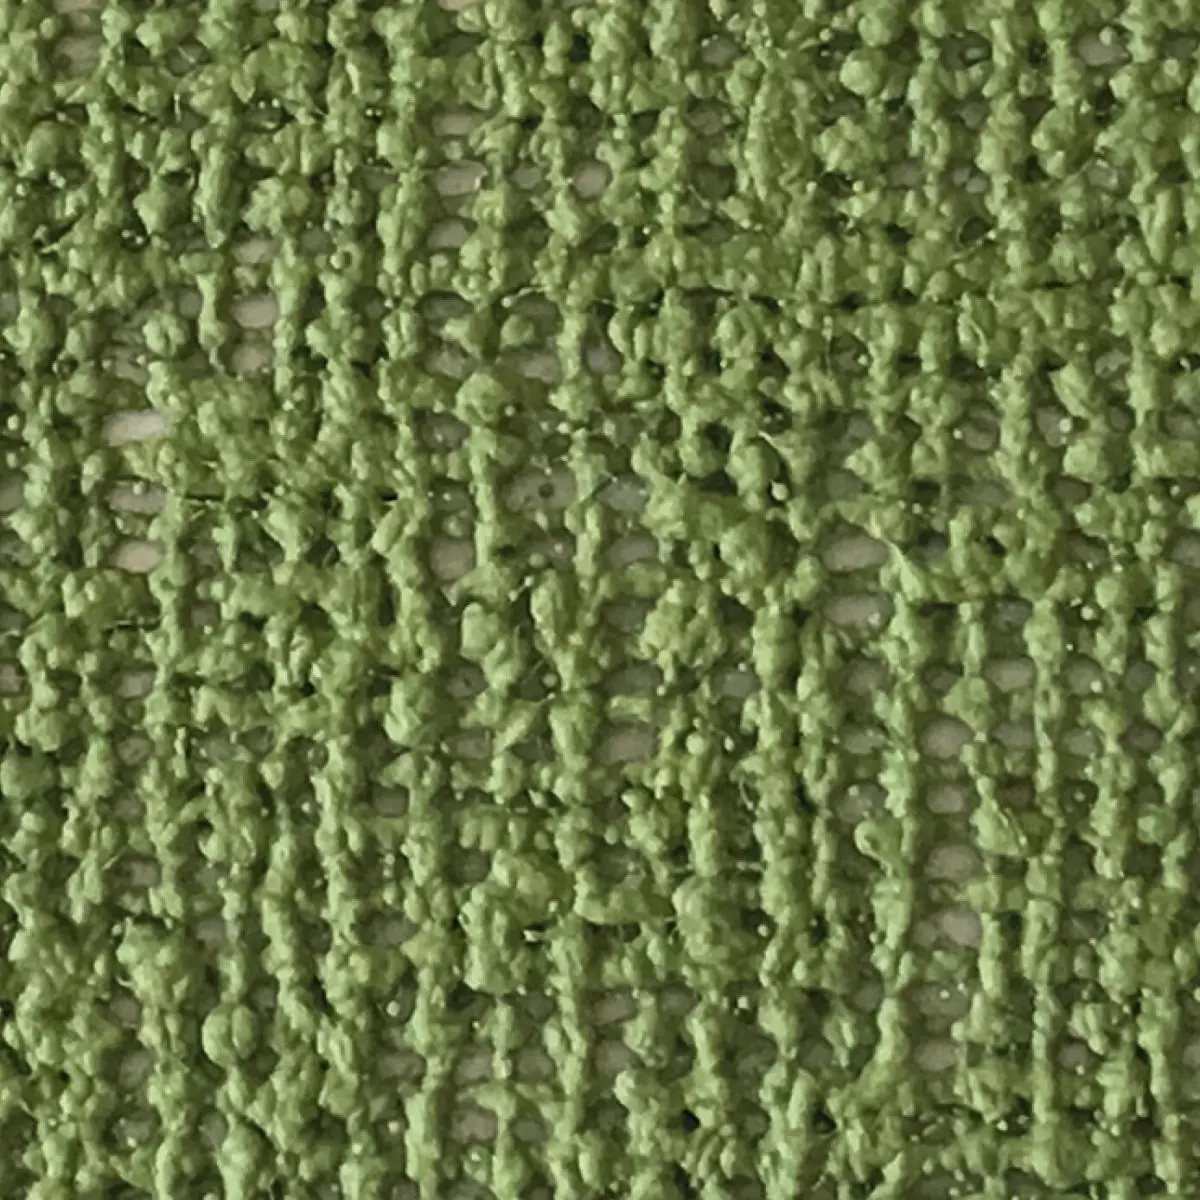 Markízny koberec Aero-Tex - 250 x 400 cm, zelený